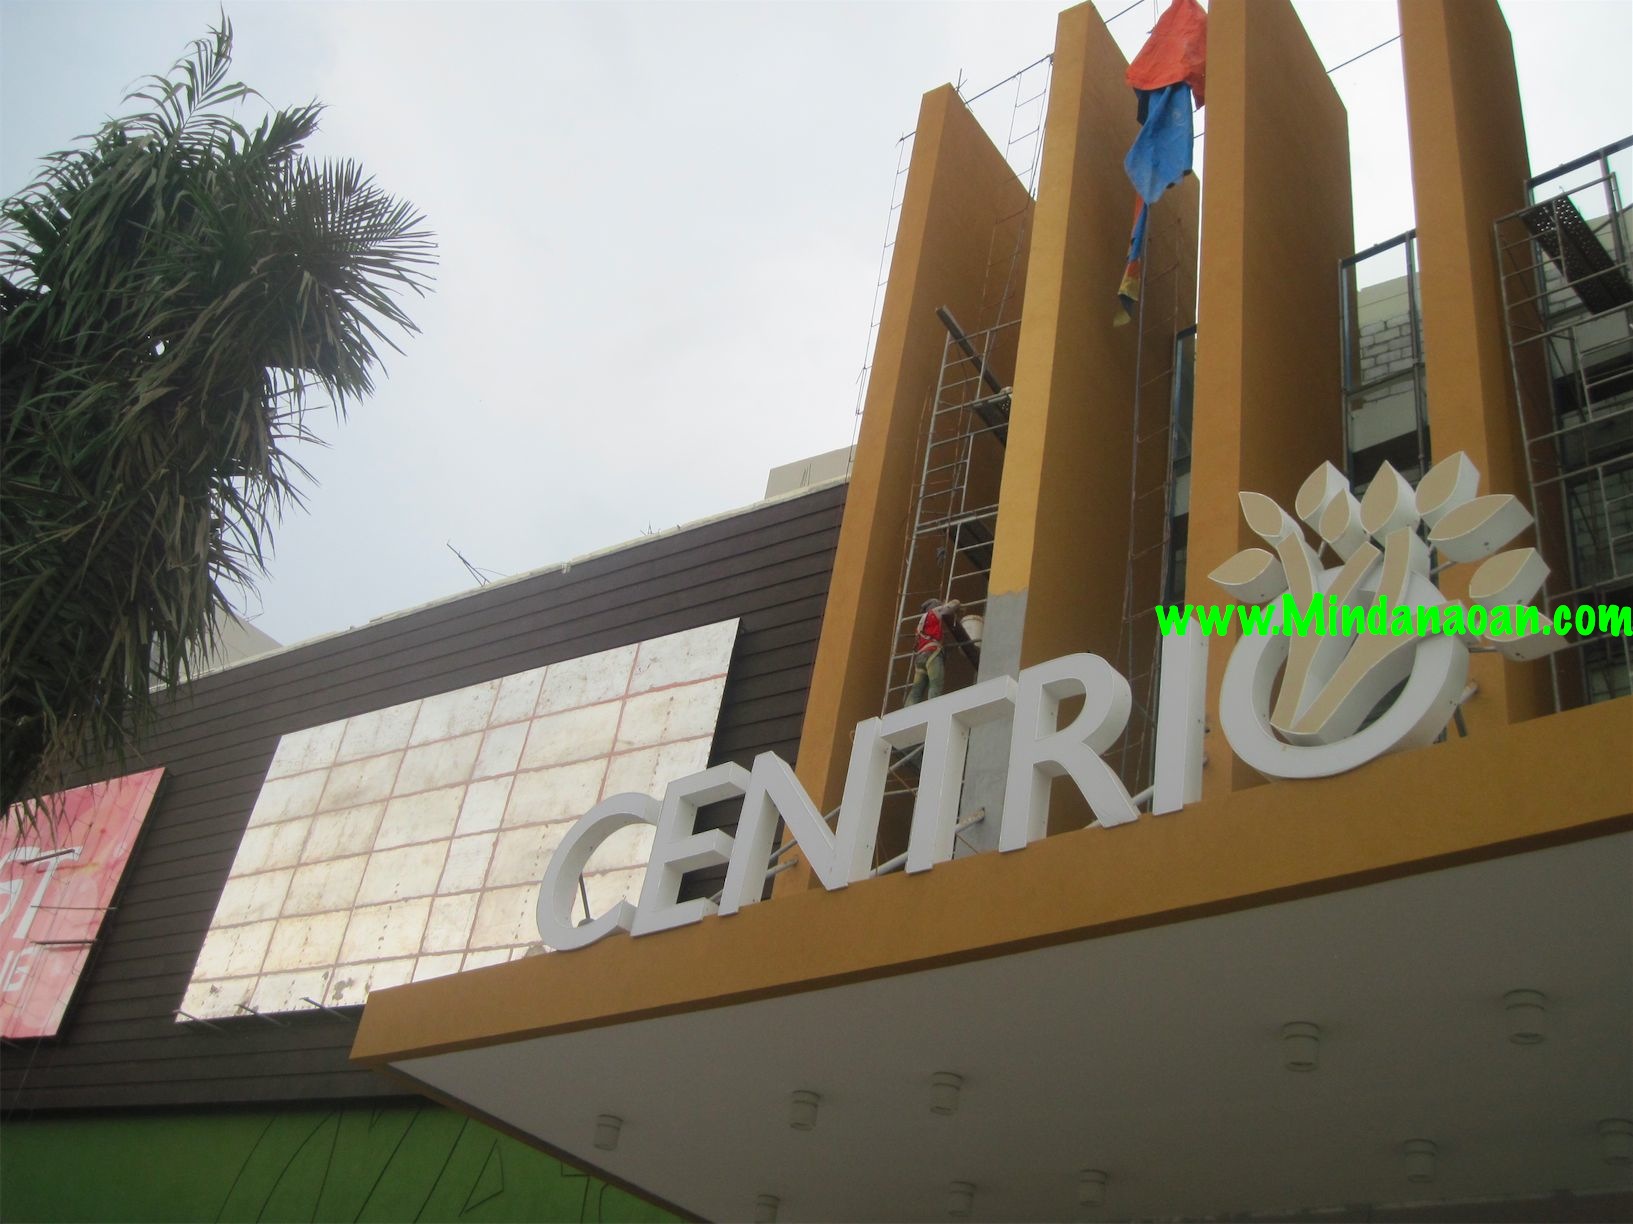 Centrio Ayala Mall CDO fun facts and photos